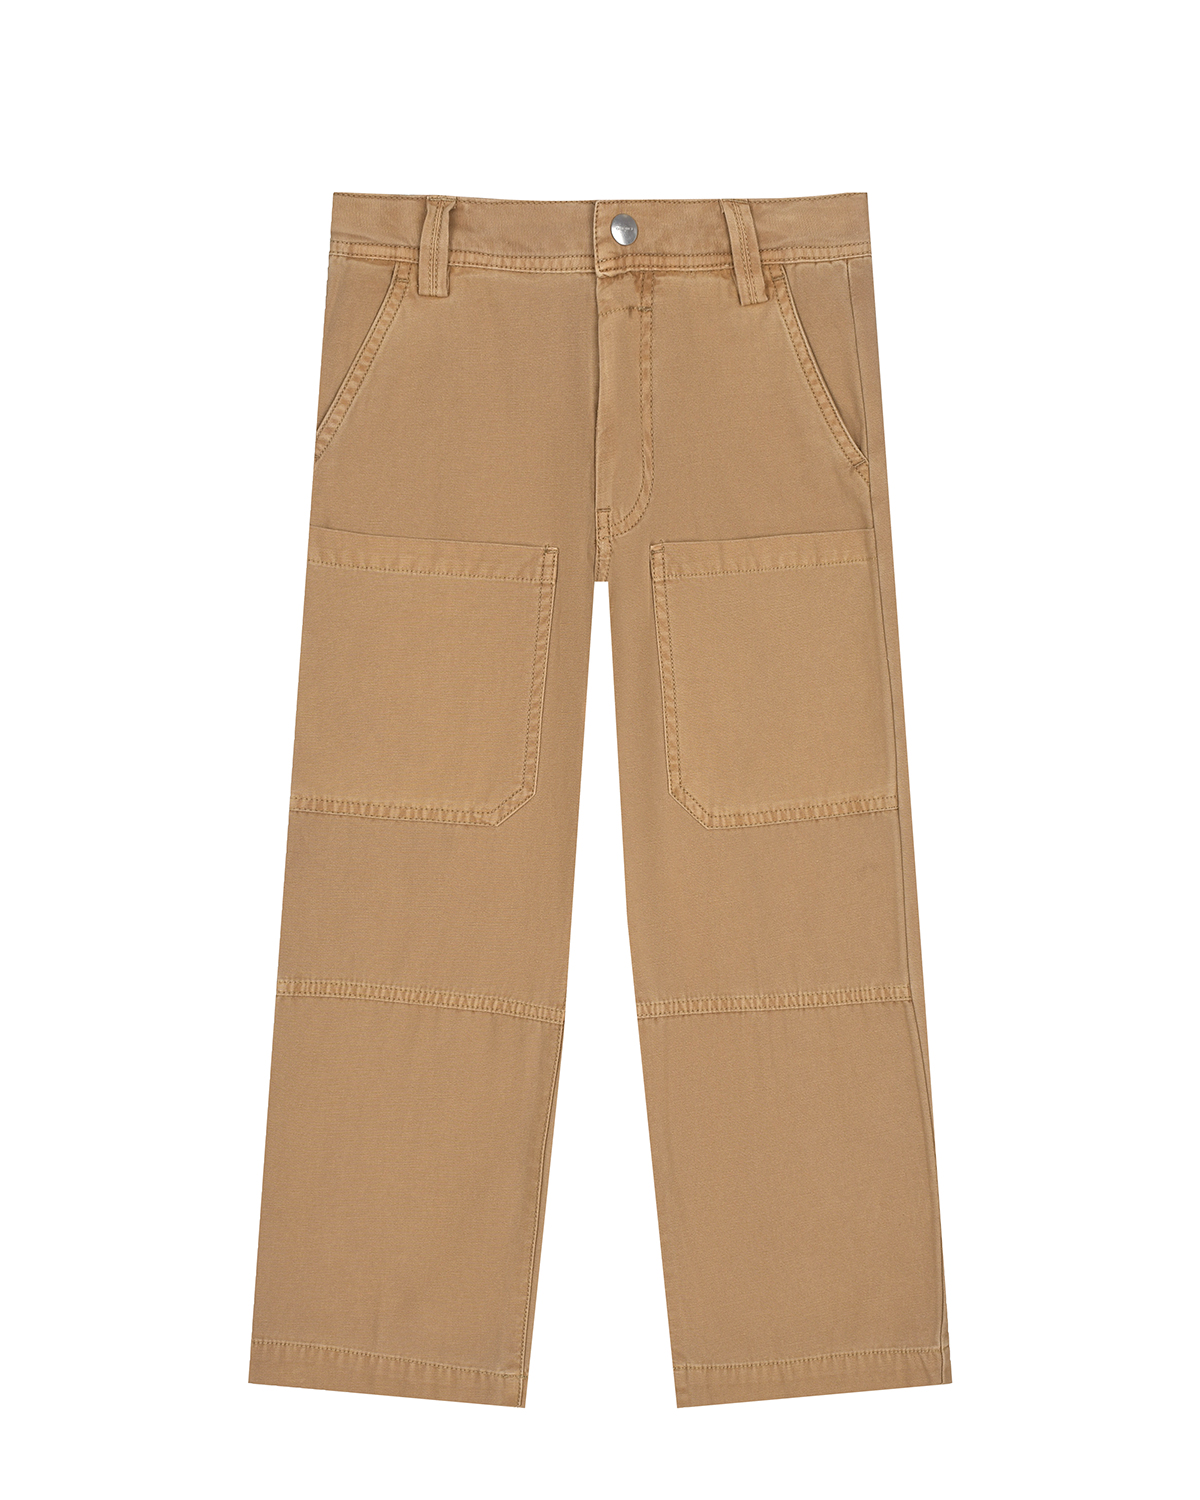 Коричневые брюки с накладными карманами Diesel, размер 128, цвет коричневый